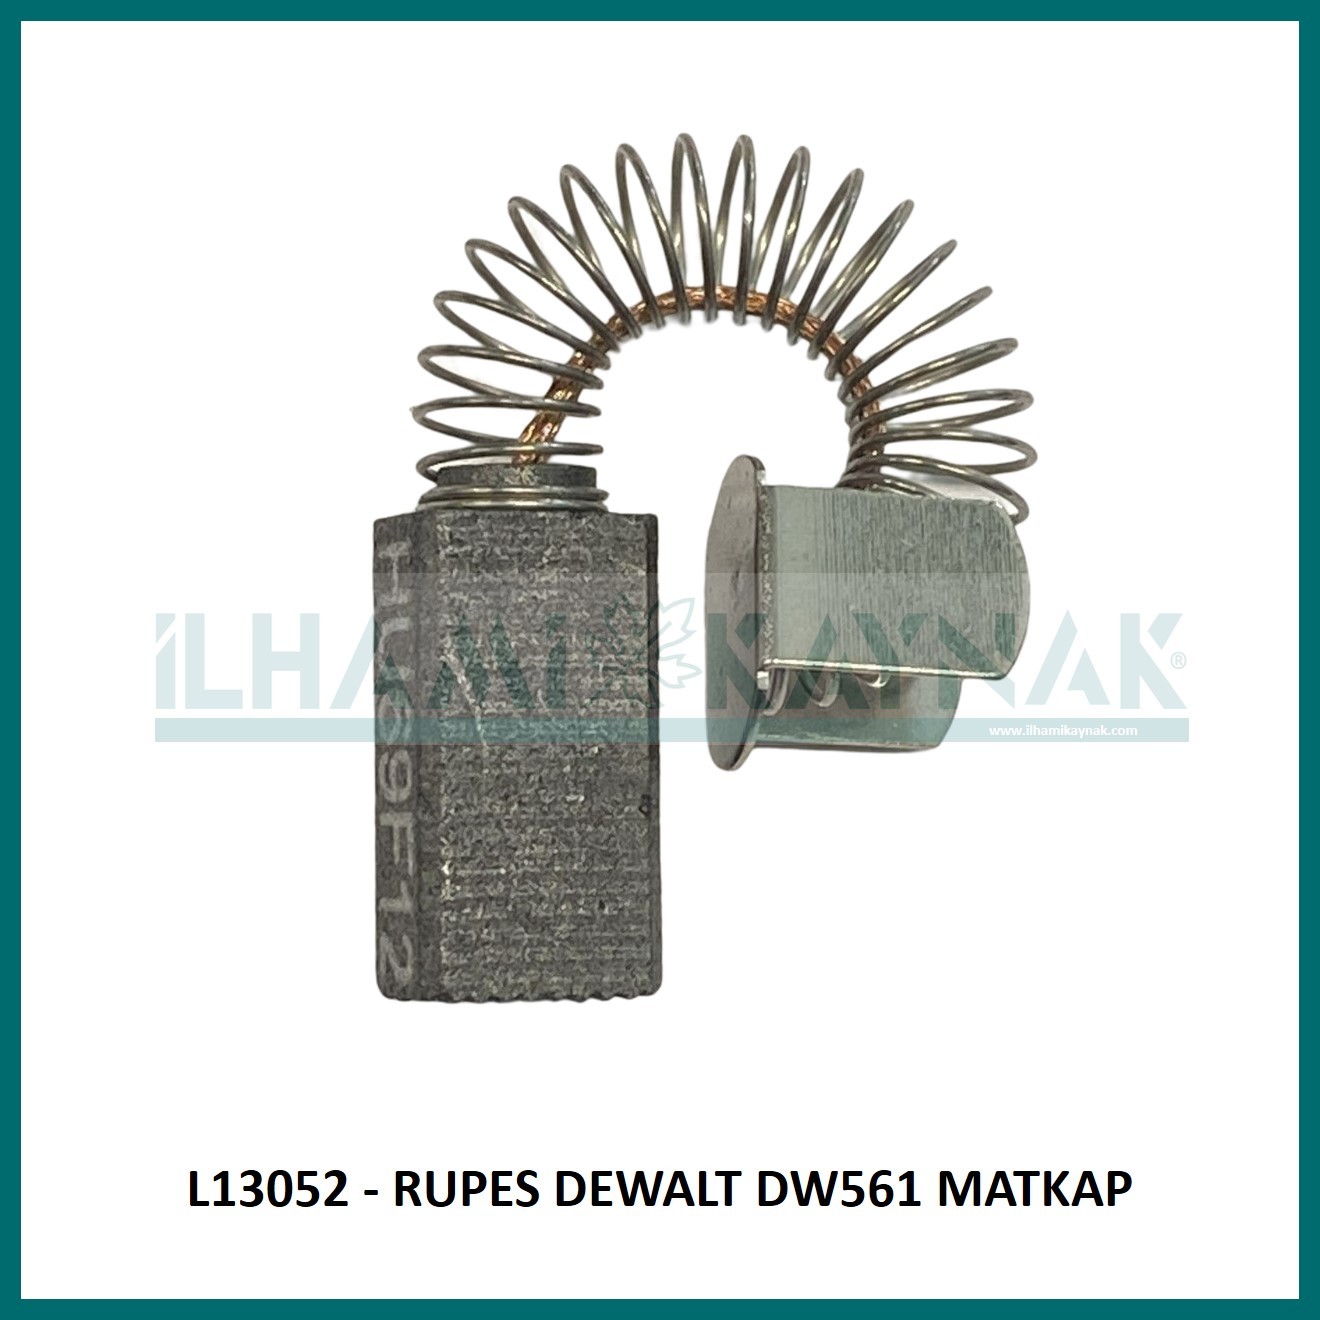 L13052 - RUPES DEWALT DW561 MATKAP - 6*8*18 mm - Minimum Satın Alım: 10 Adet.